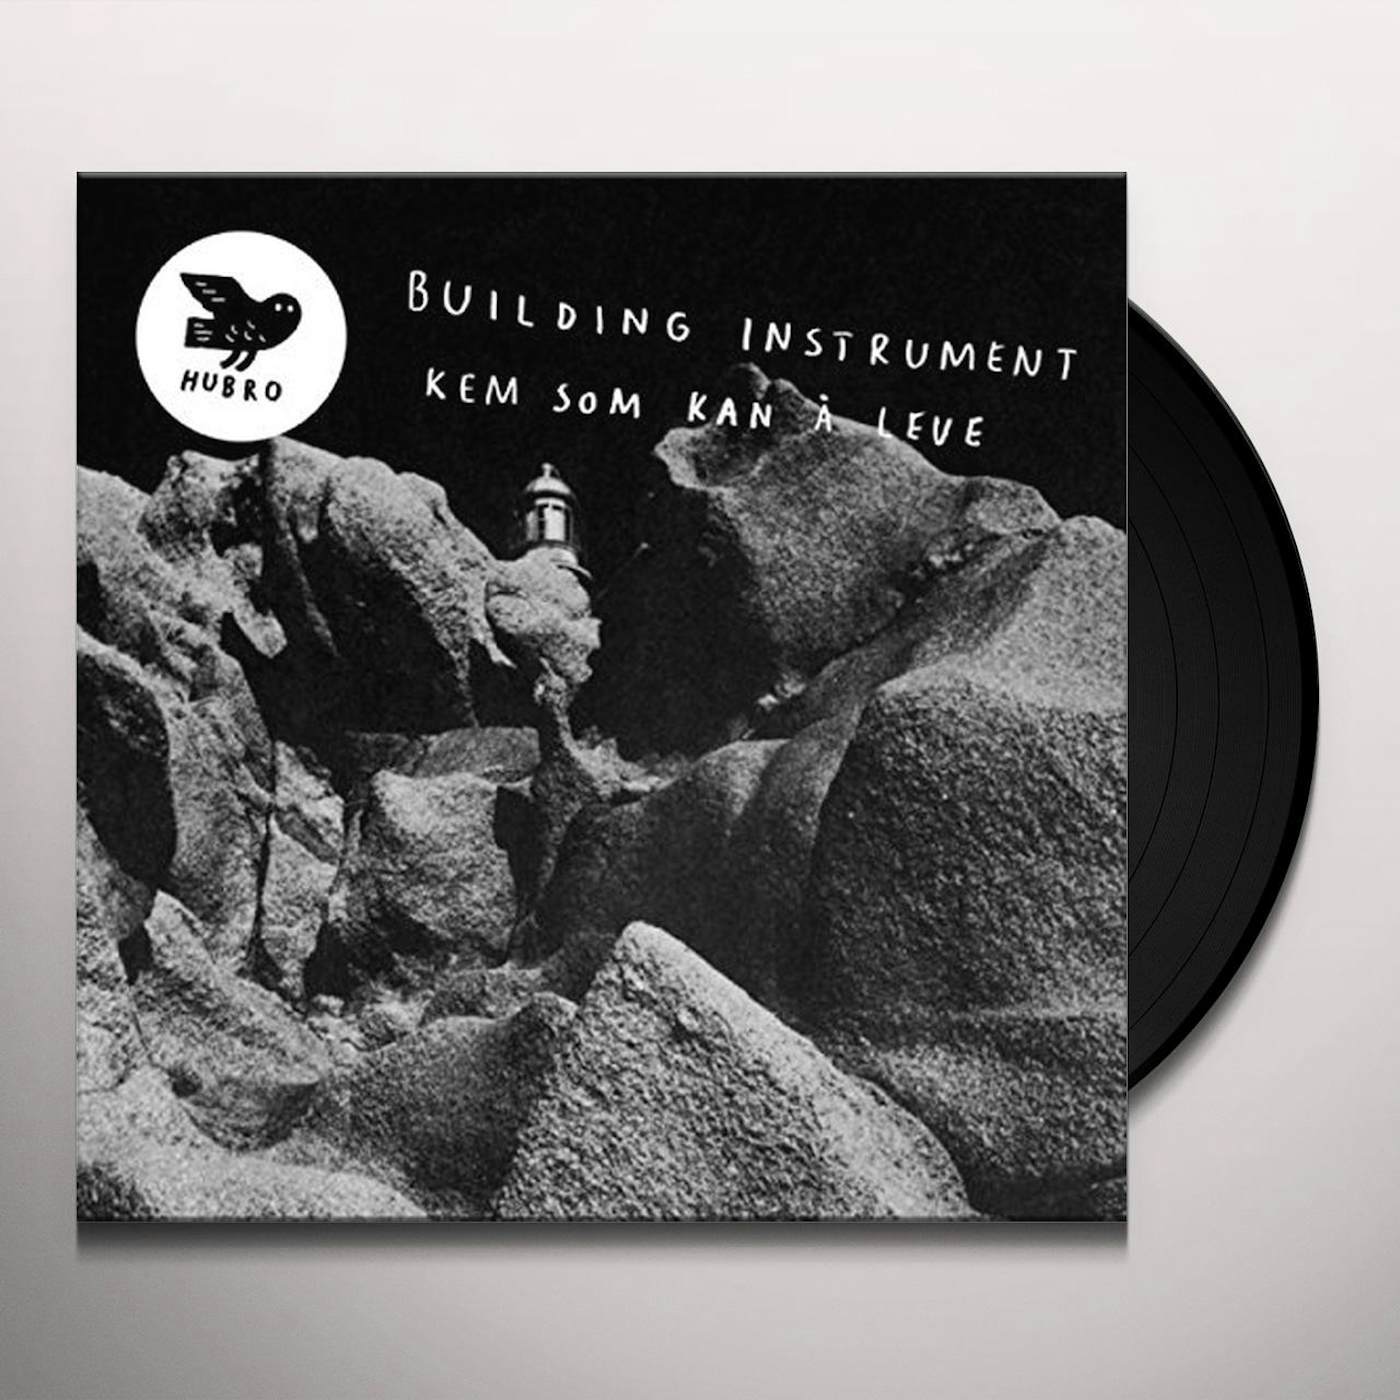 Building Instrument KEM SOM KANA LEVE Vinyl Record